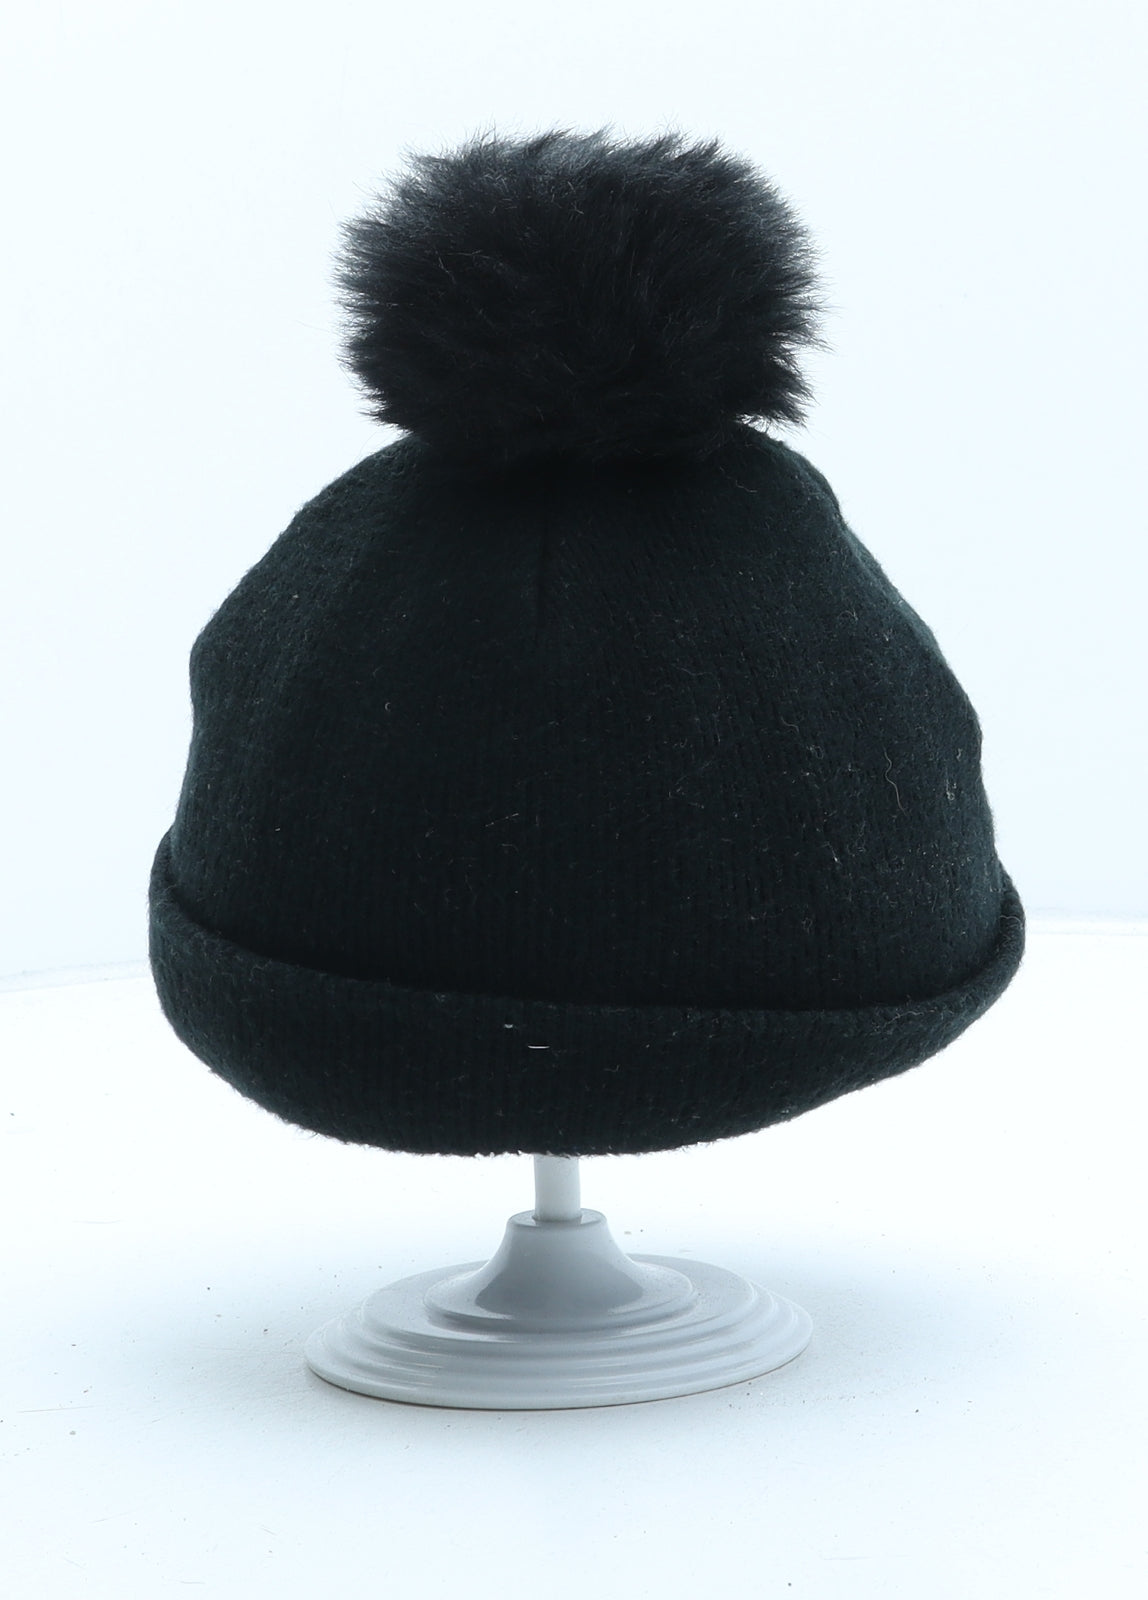 River Island Girls Black Acrylic Bobble Hat One Size - UK Size 1-5 Years